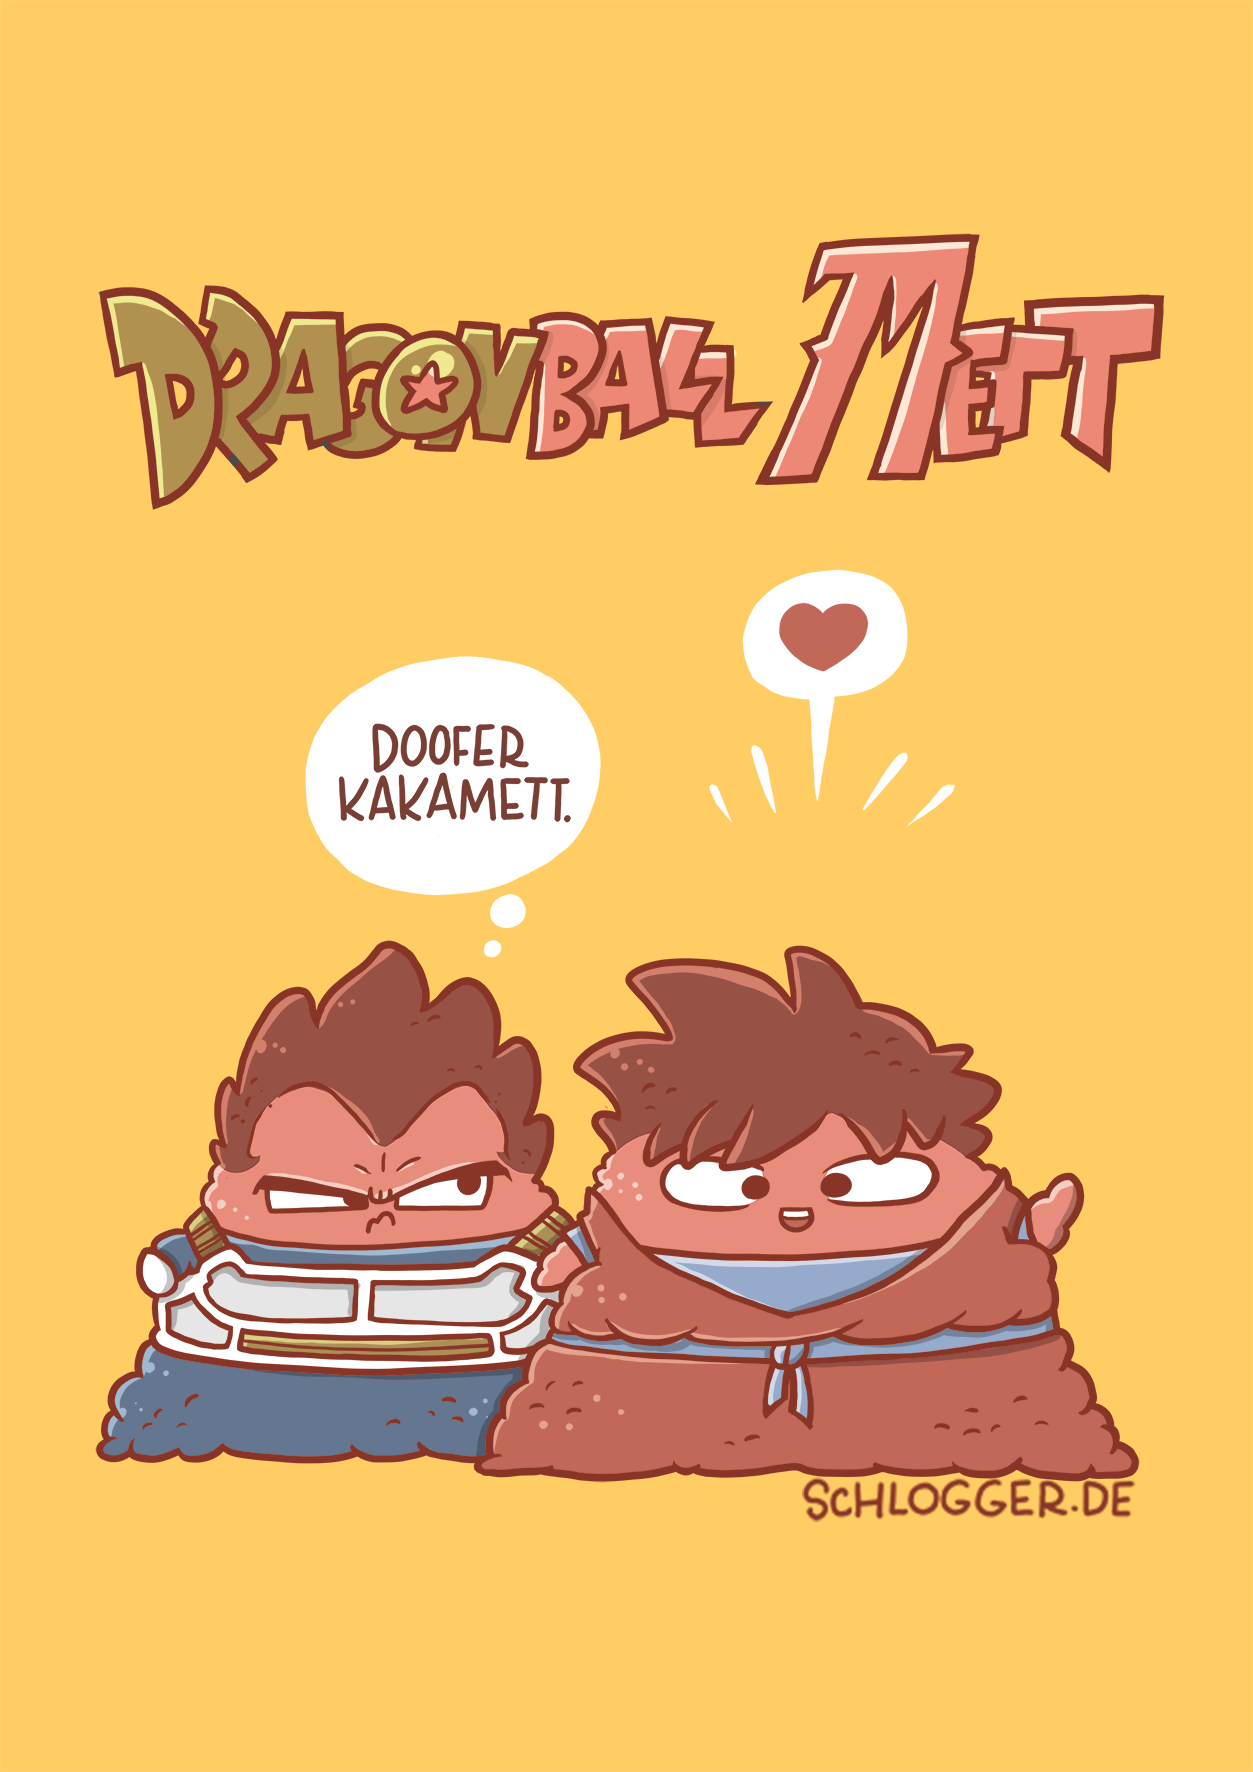 Dragonball Mett